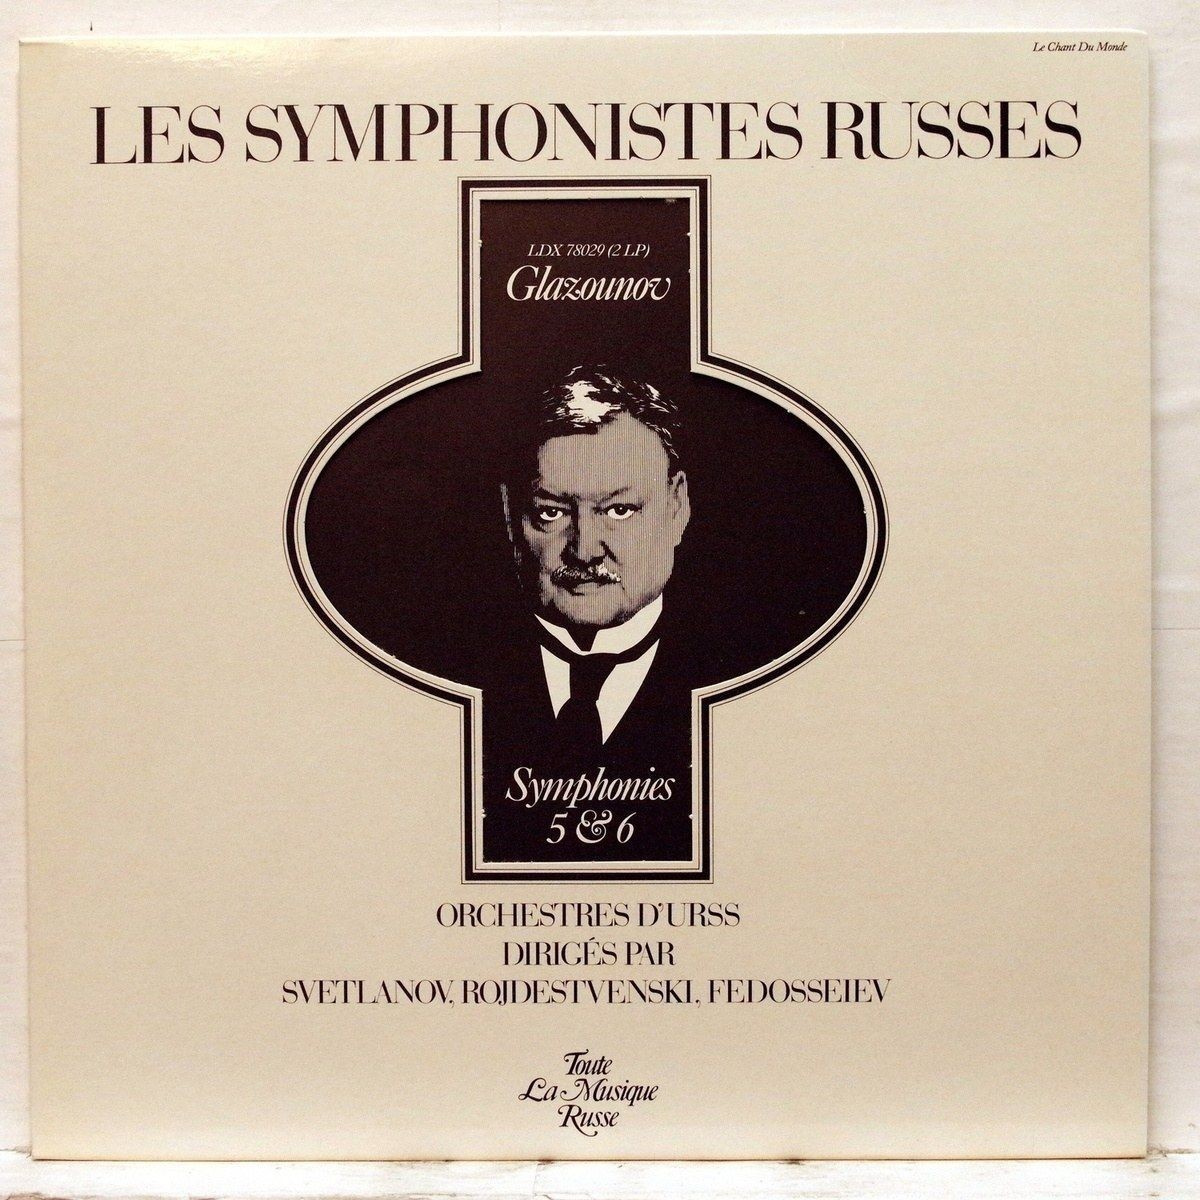 Les Symphonistes Russes. Glazounov. Symphonies 5 & 6 (Le Chant Du Monde ‎LDX 78029, 2LP)